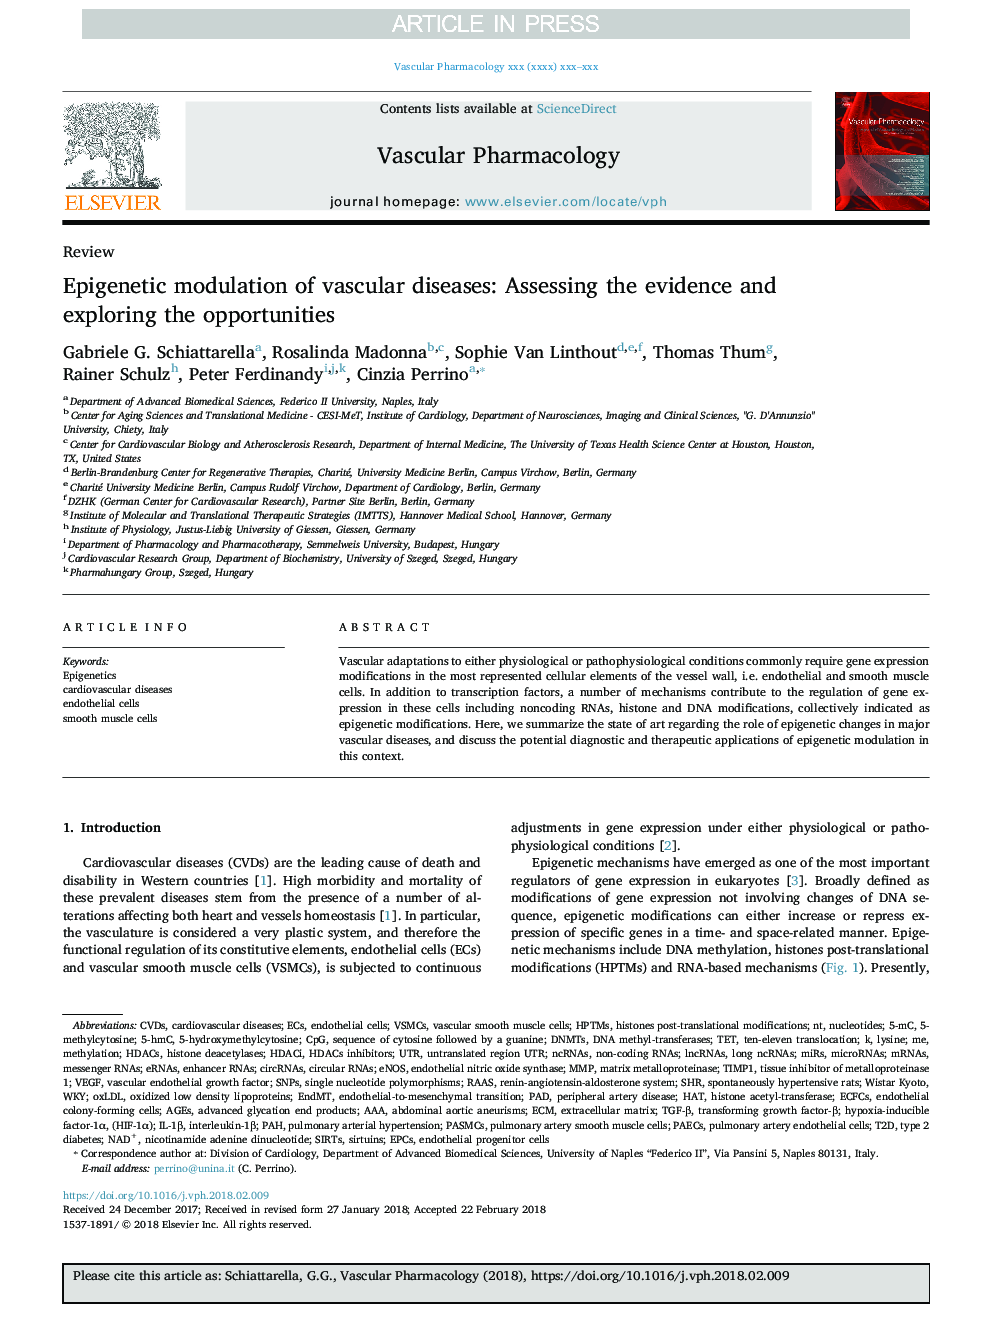 مدولاسیون اپیگنتیک بیماریهای عروقی: ارزیابی شواهد و بررسی فرصت ها 